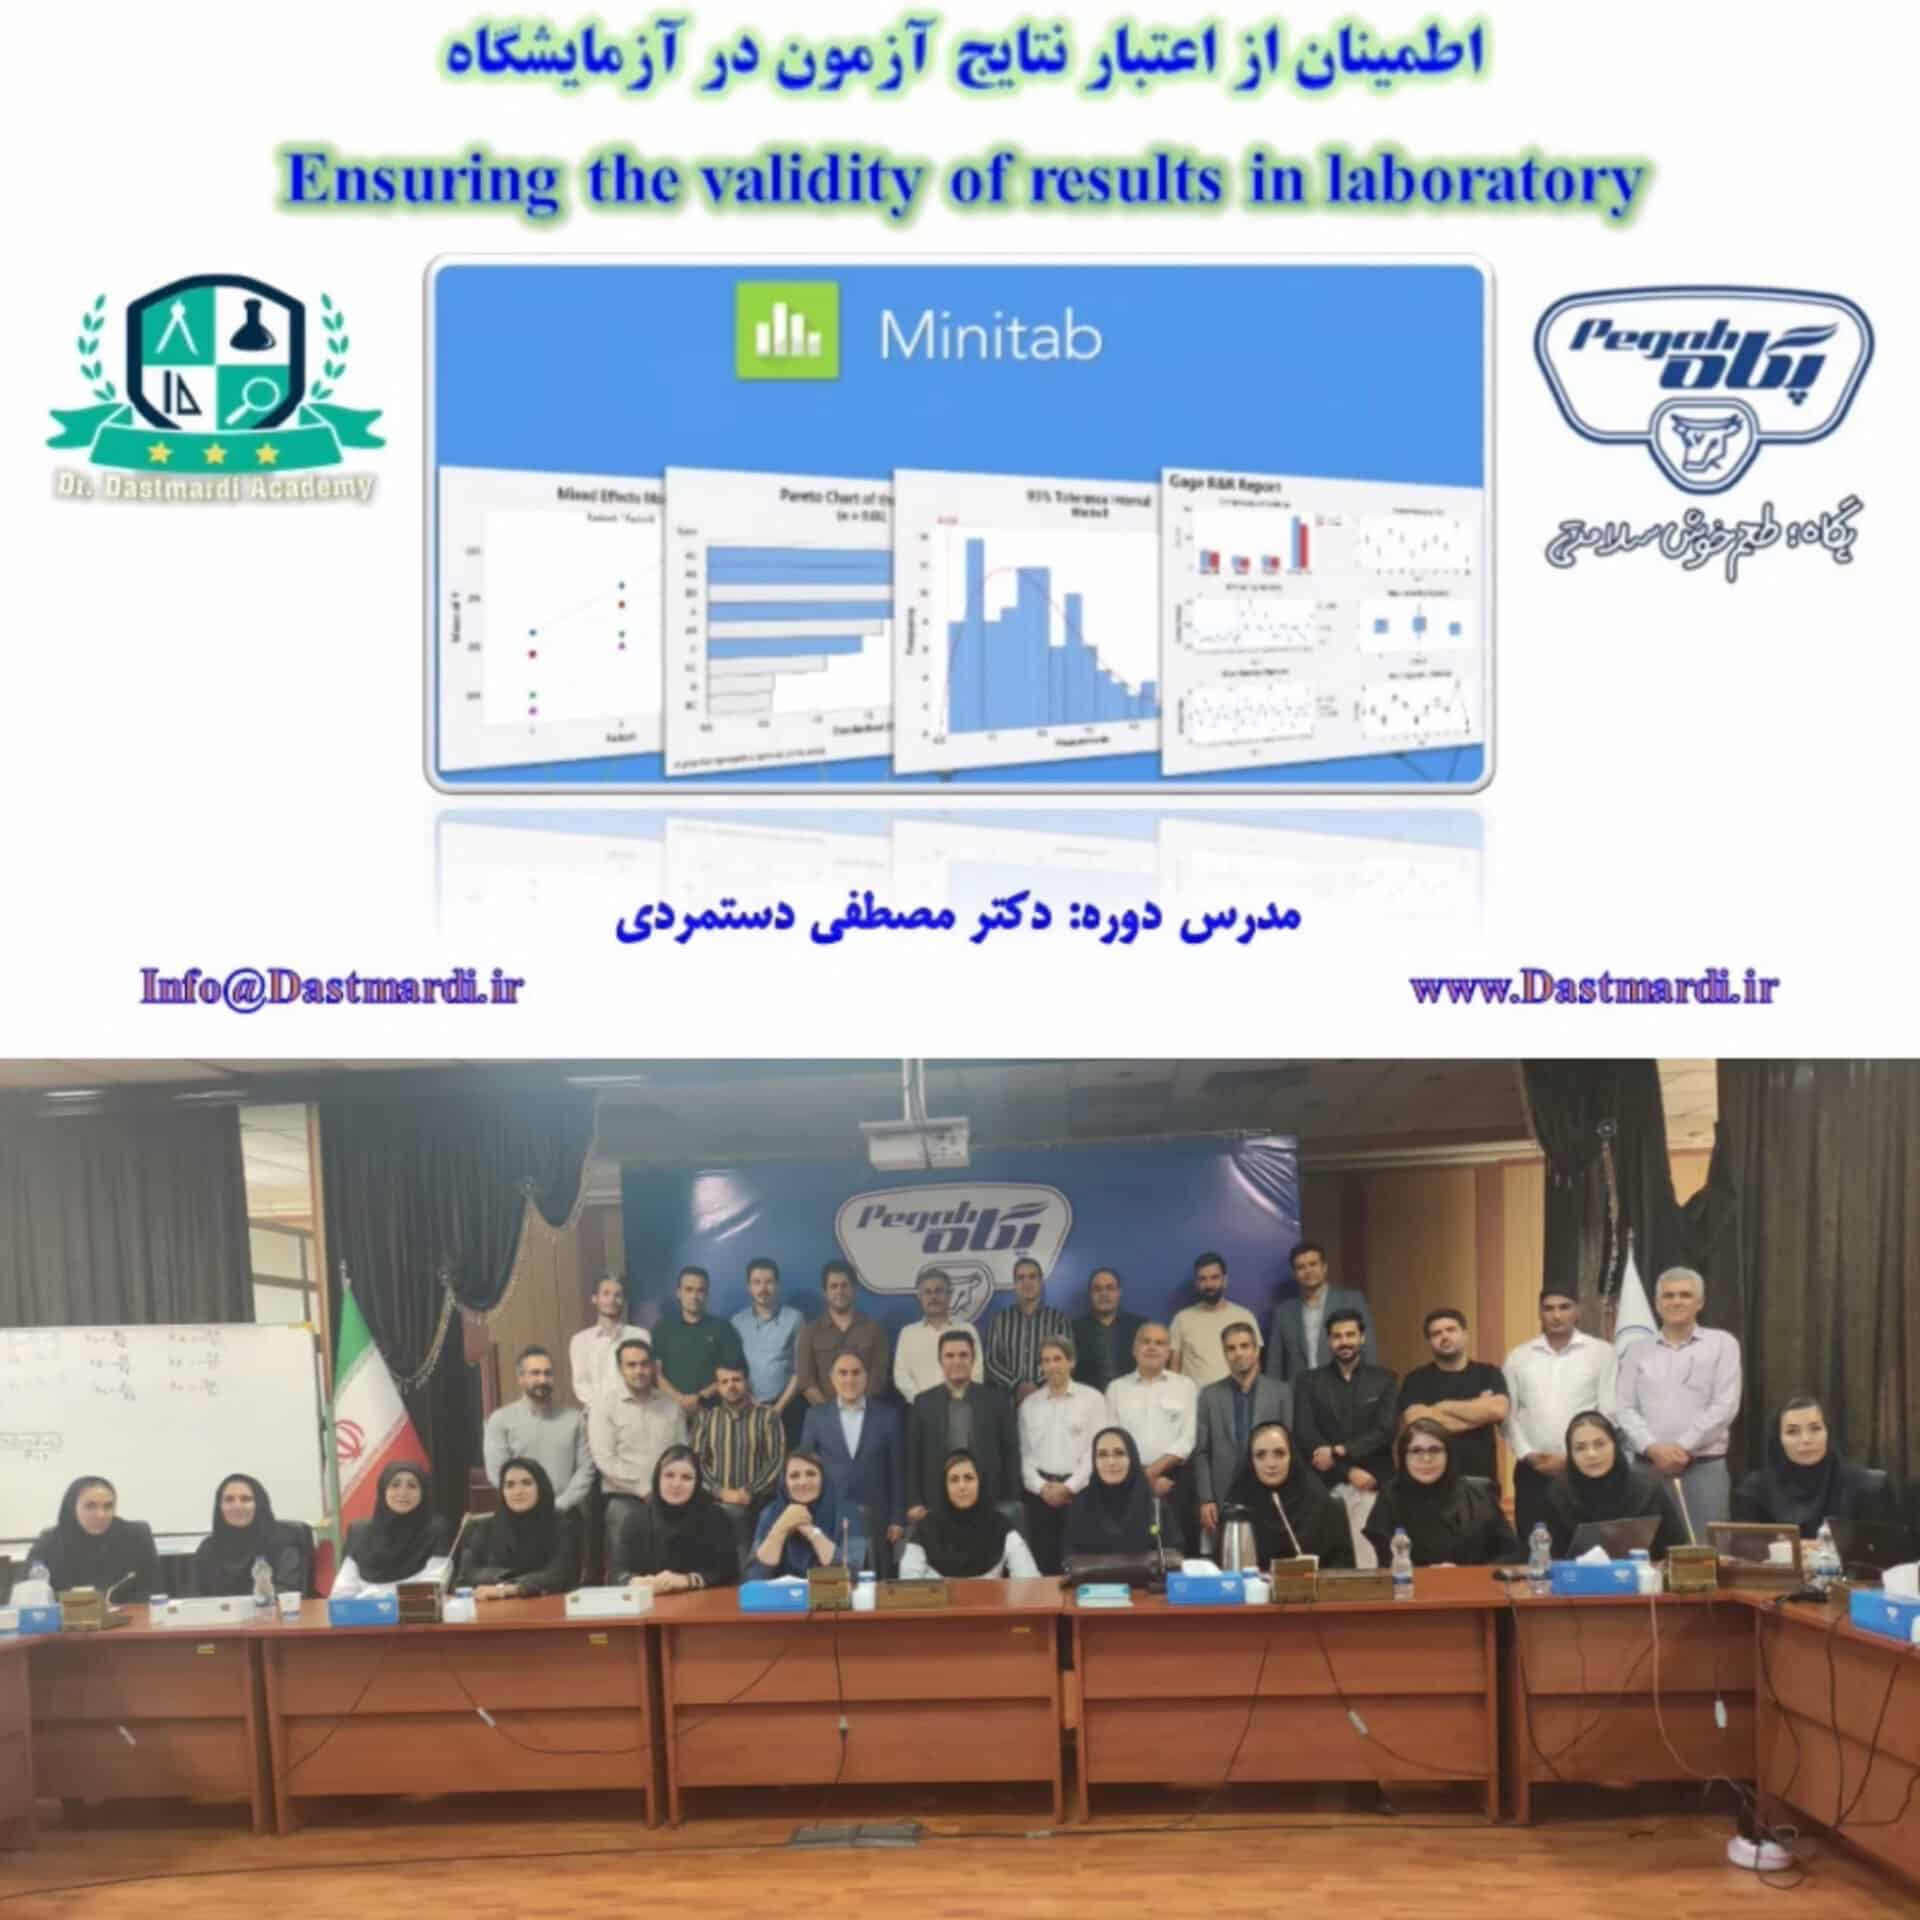 برگزاری دوره آموزشی اطمینان از اعتبار نتایج آزمون برای کارکنان آزمایشگاه های شرکت صنایع شیر ایران (پگاه)